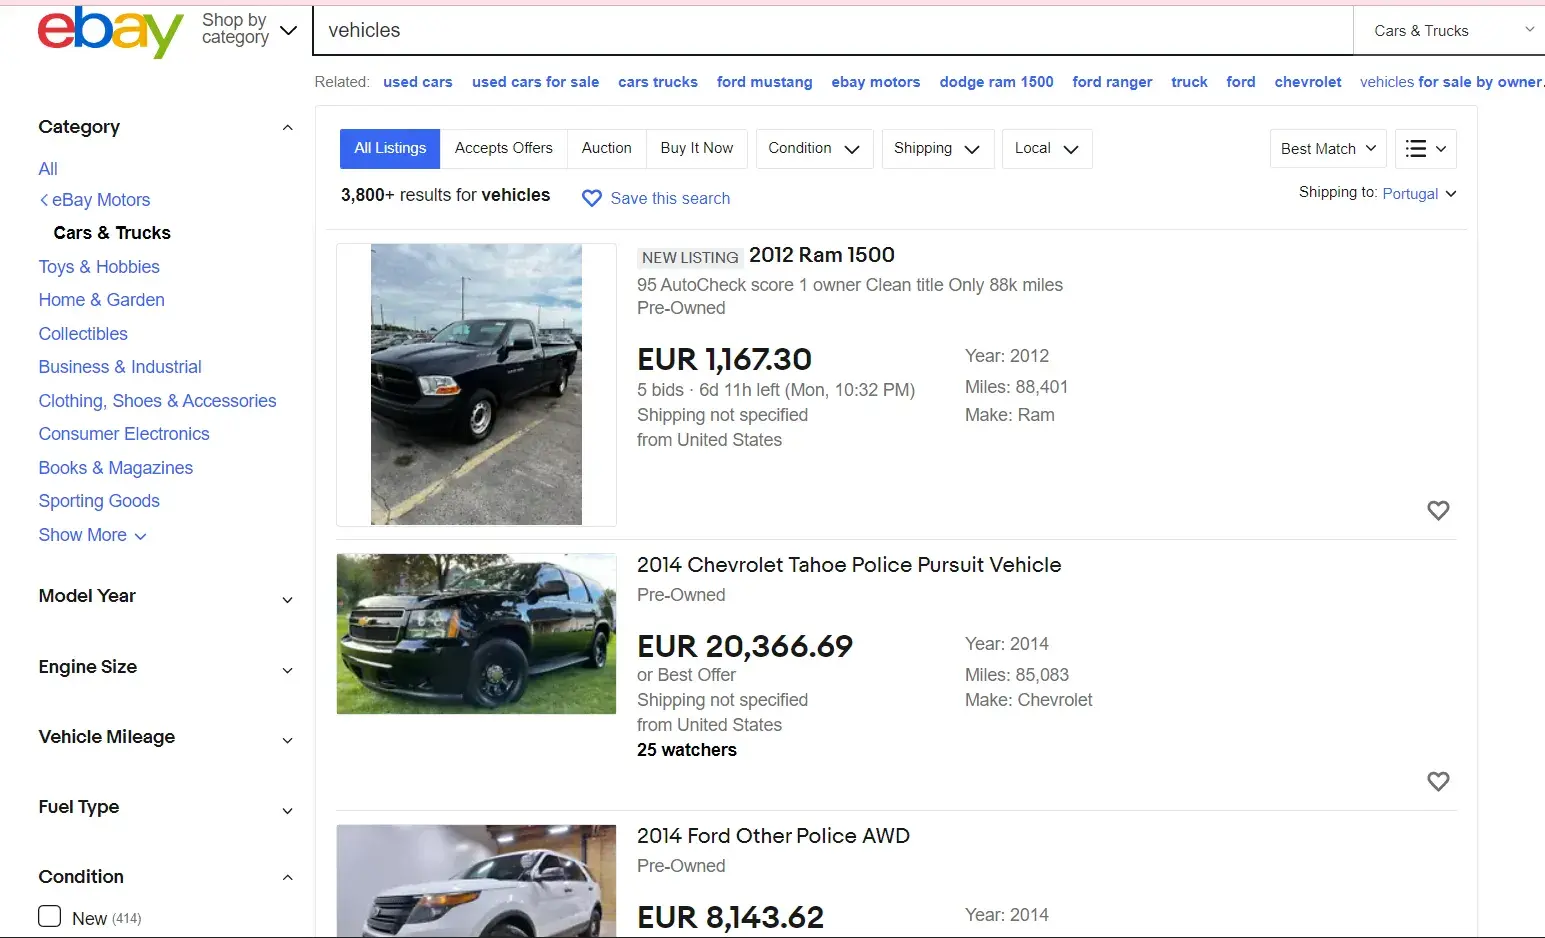 Does eBay ship cars